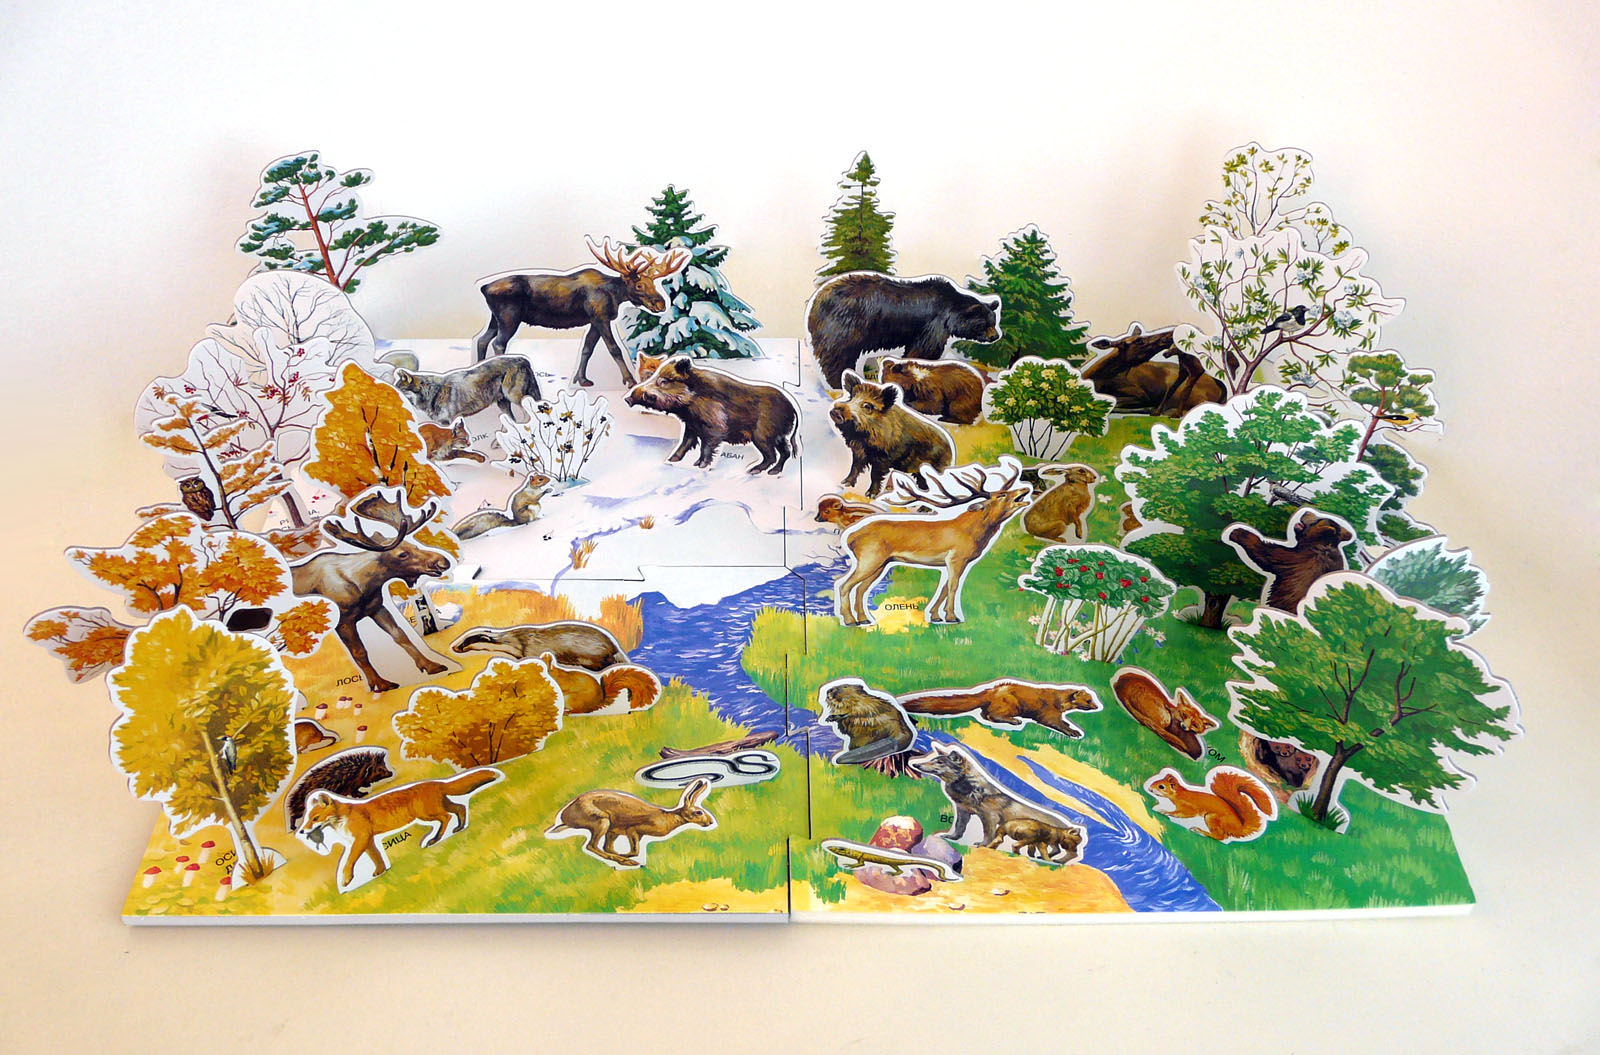 Время года зима изменения в жизни животных. Макет леса для детского сада. Панорама леса для детского сада. Макет животные в лесу. Модель леса для дошкольников.